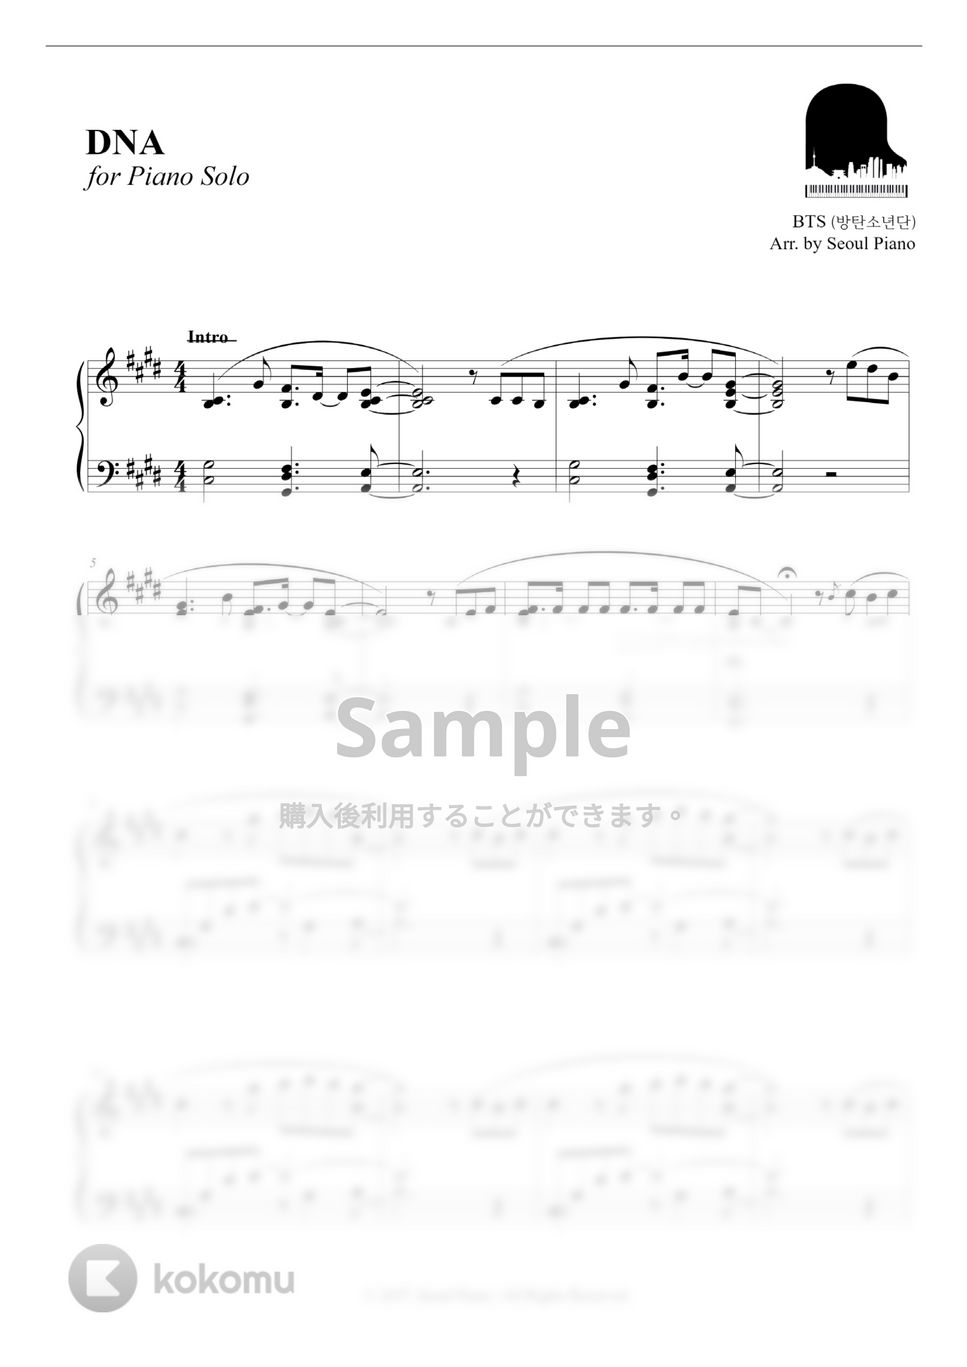 防弾少年団 (BTS) - DNA by Seoul Piano